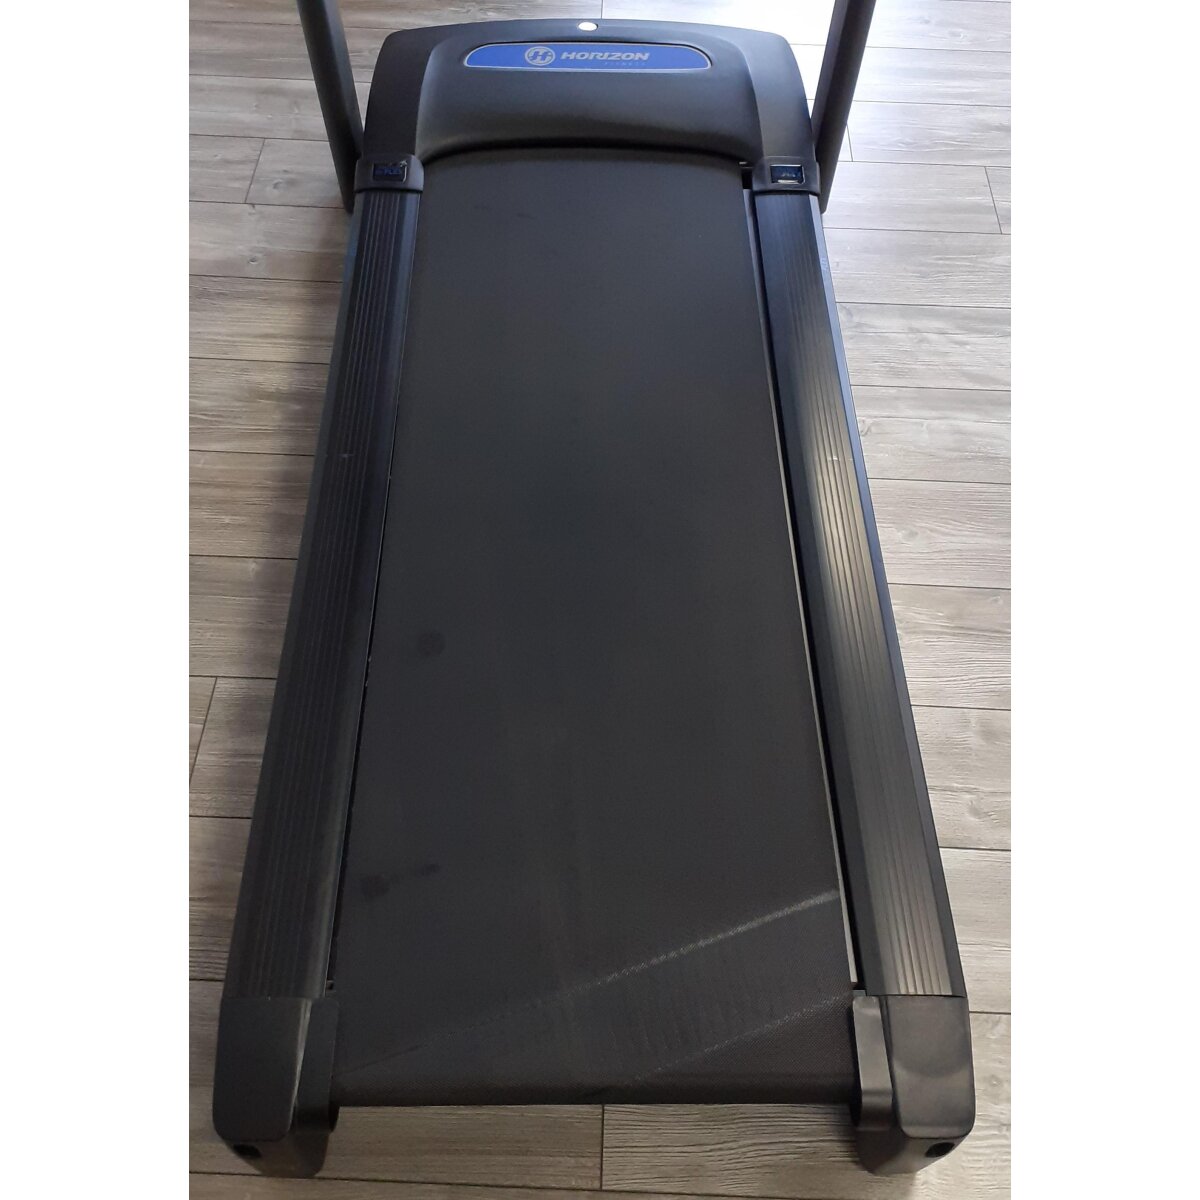 Horizon Fitness Laufband T101 - B-Ware gut, 742,99 €